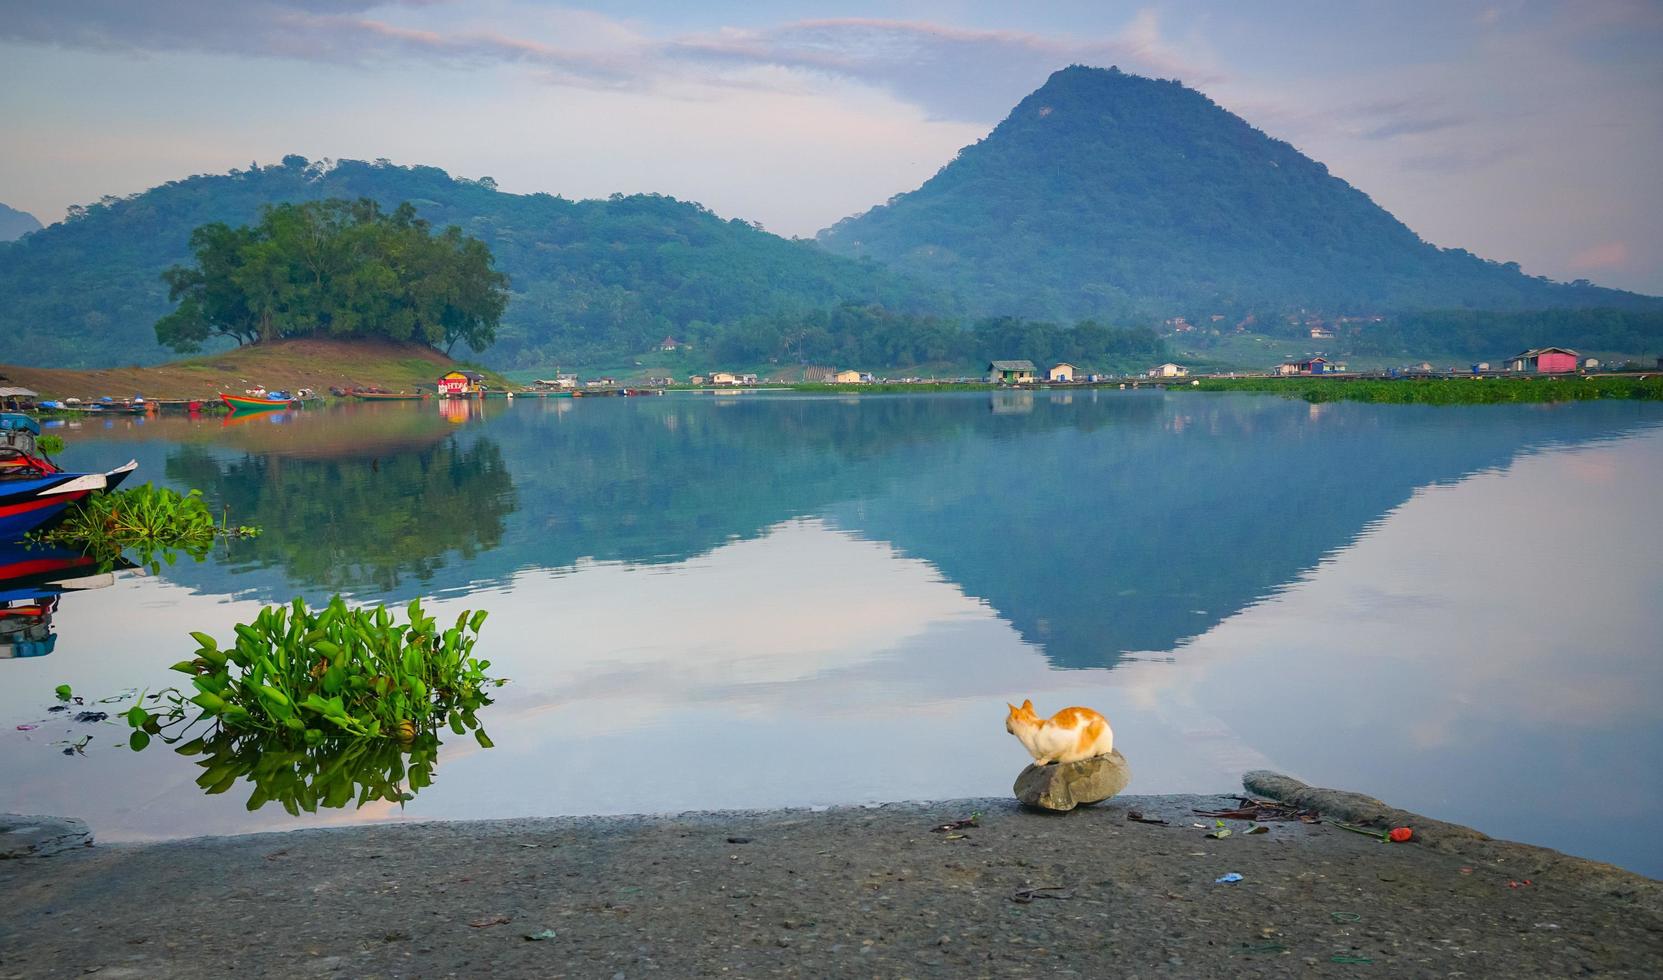 schöne Landschaften mit Bergen und Spiegelungen an den Seen. perfekt für Tapeten oder natürlichen Hintergrund. launischer ruhiger Morgen. kostenloses Foto